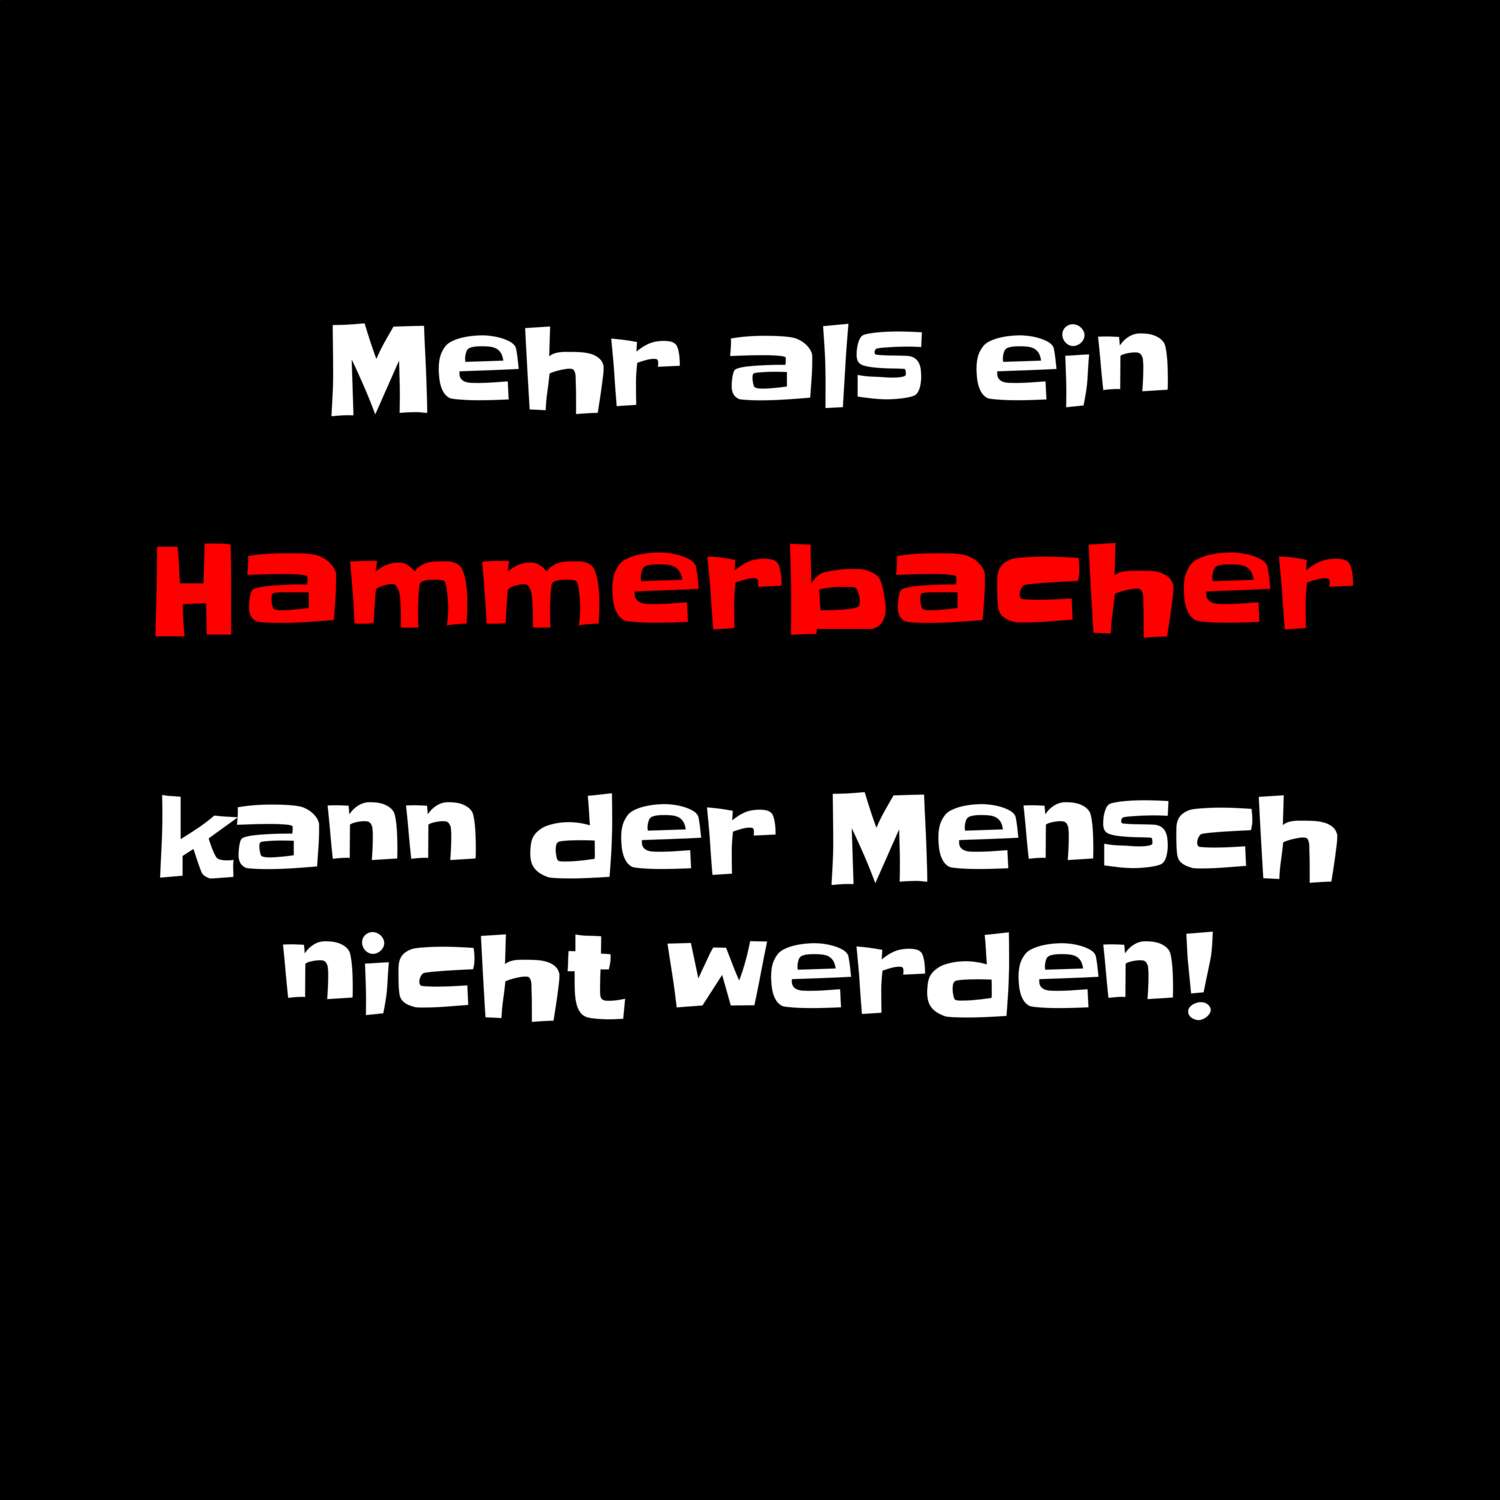 Hammerbach T-Shirt »Mehr als ein«